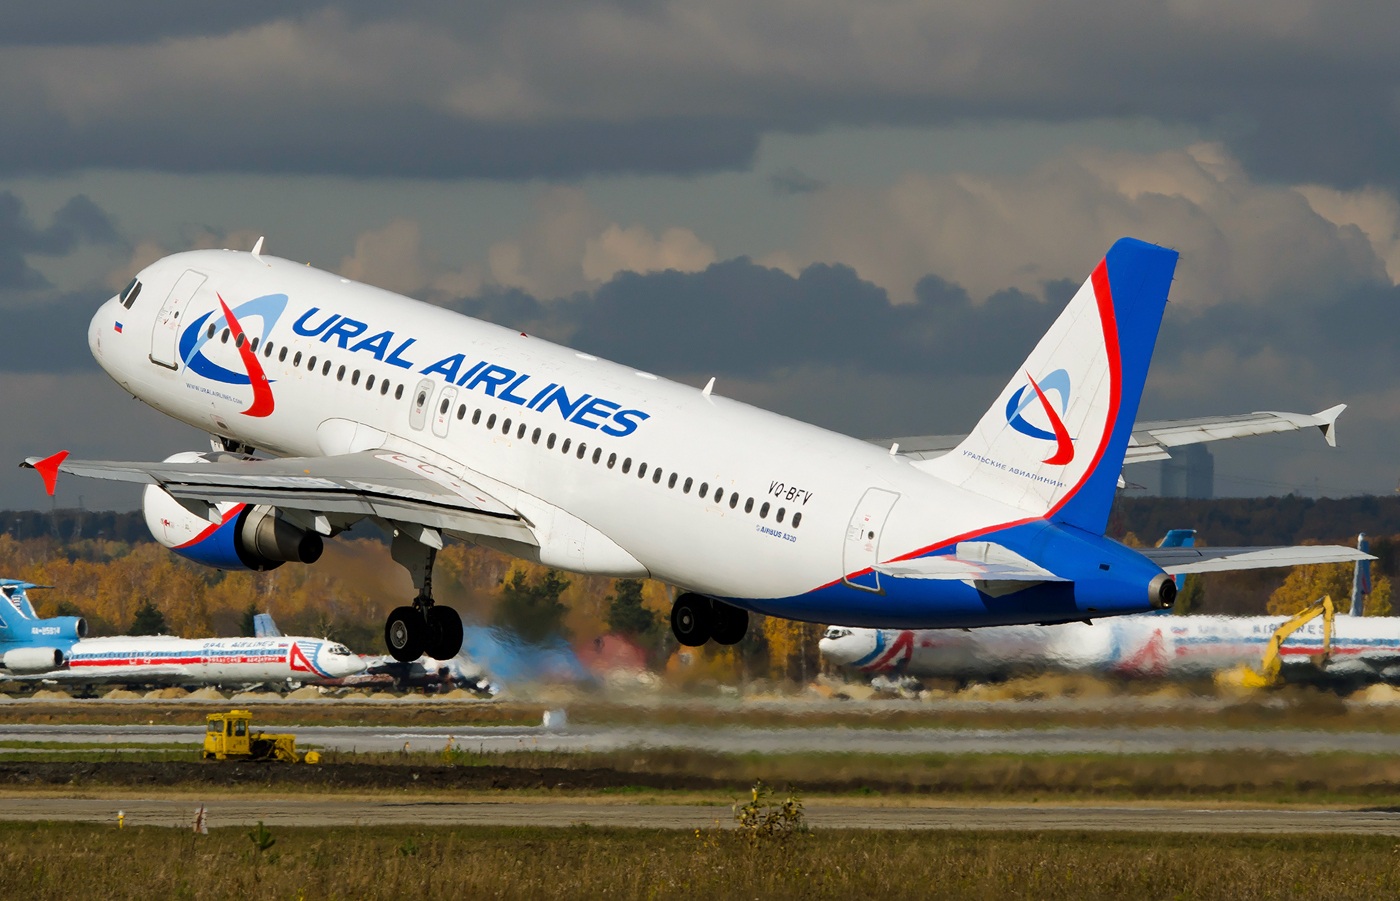 Авиабилеты урал авиа стоимость билета на самолет петербург новосибирск